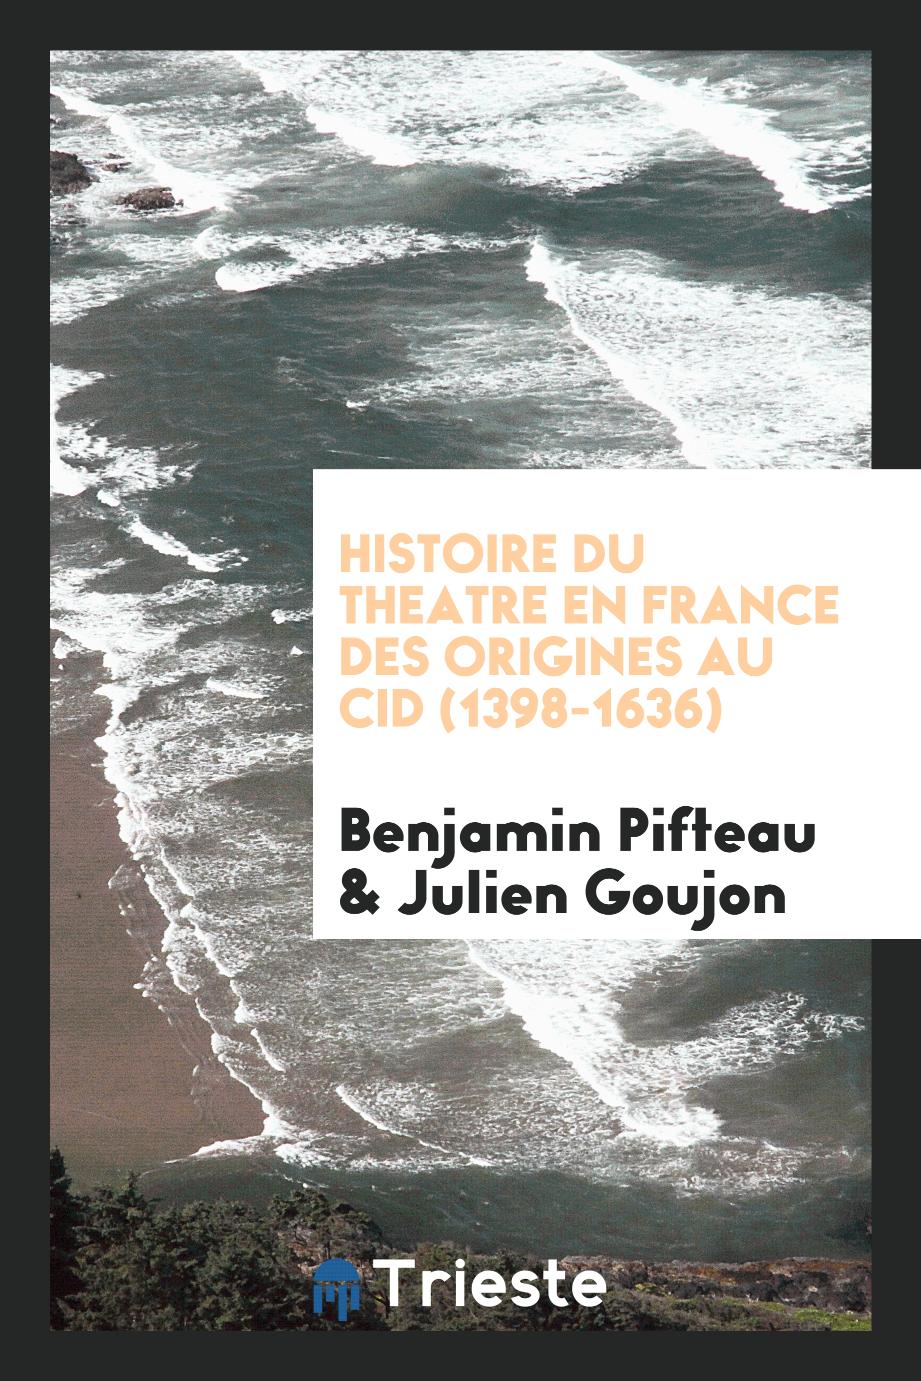 Benjamin Pifteau, Julien Goujon - Histoire du theatre en France des origines au Cid (1398-1636)